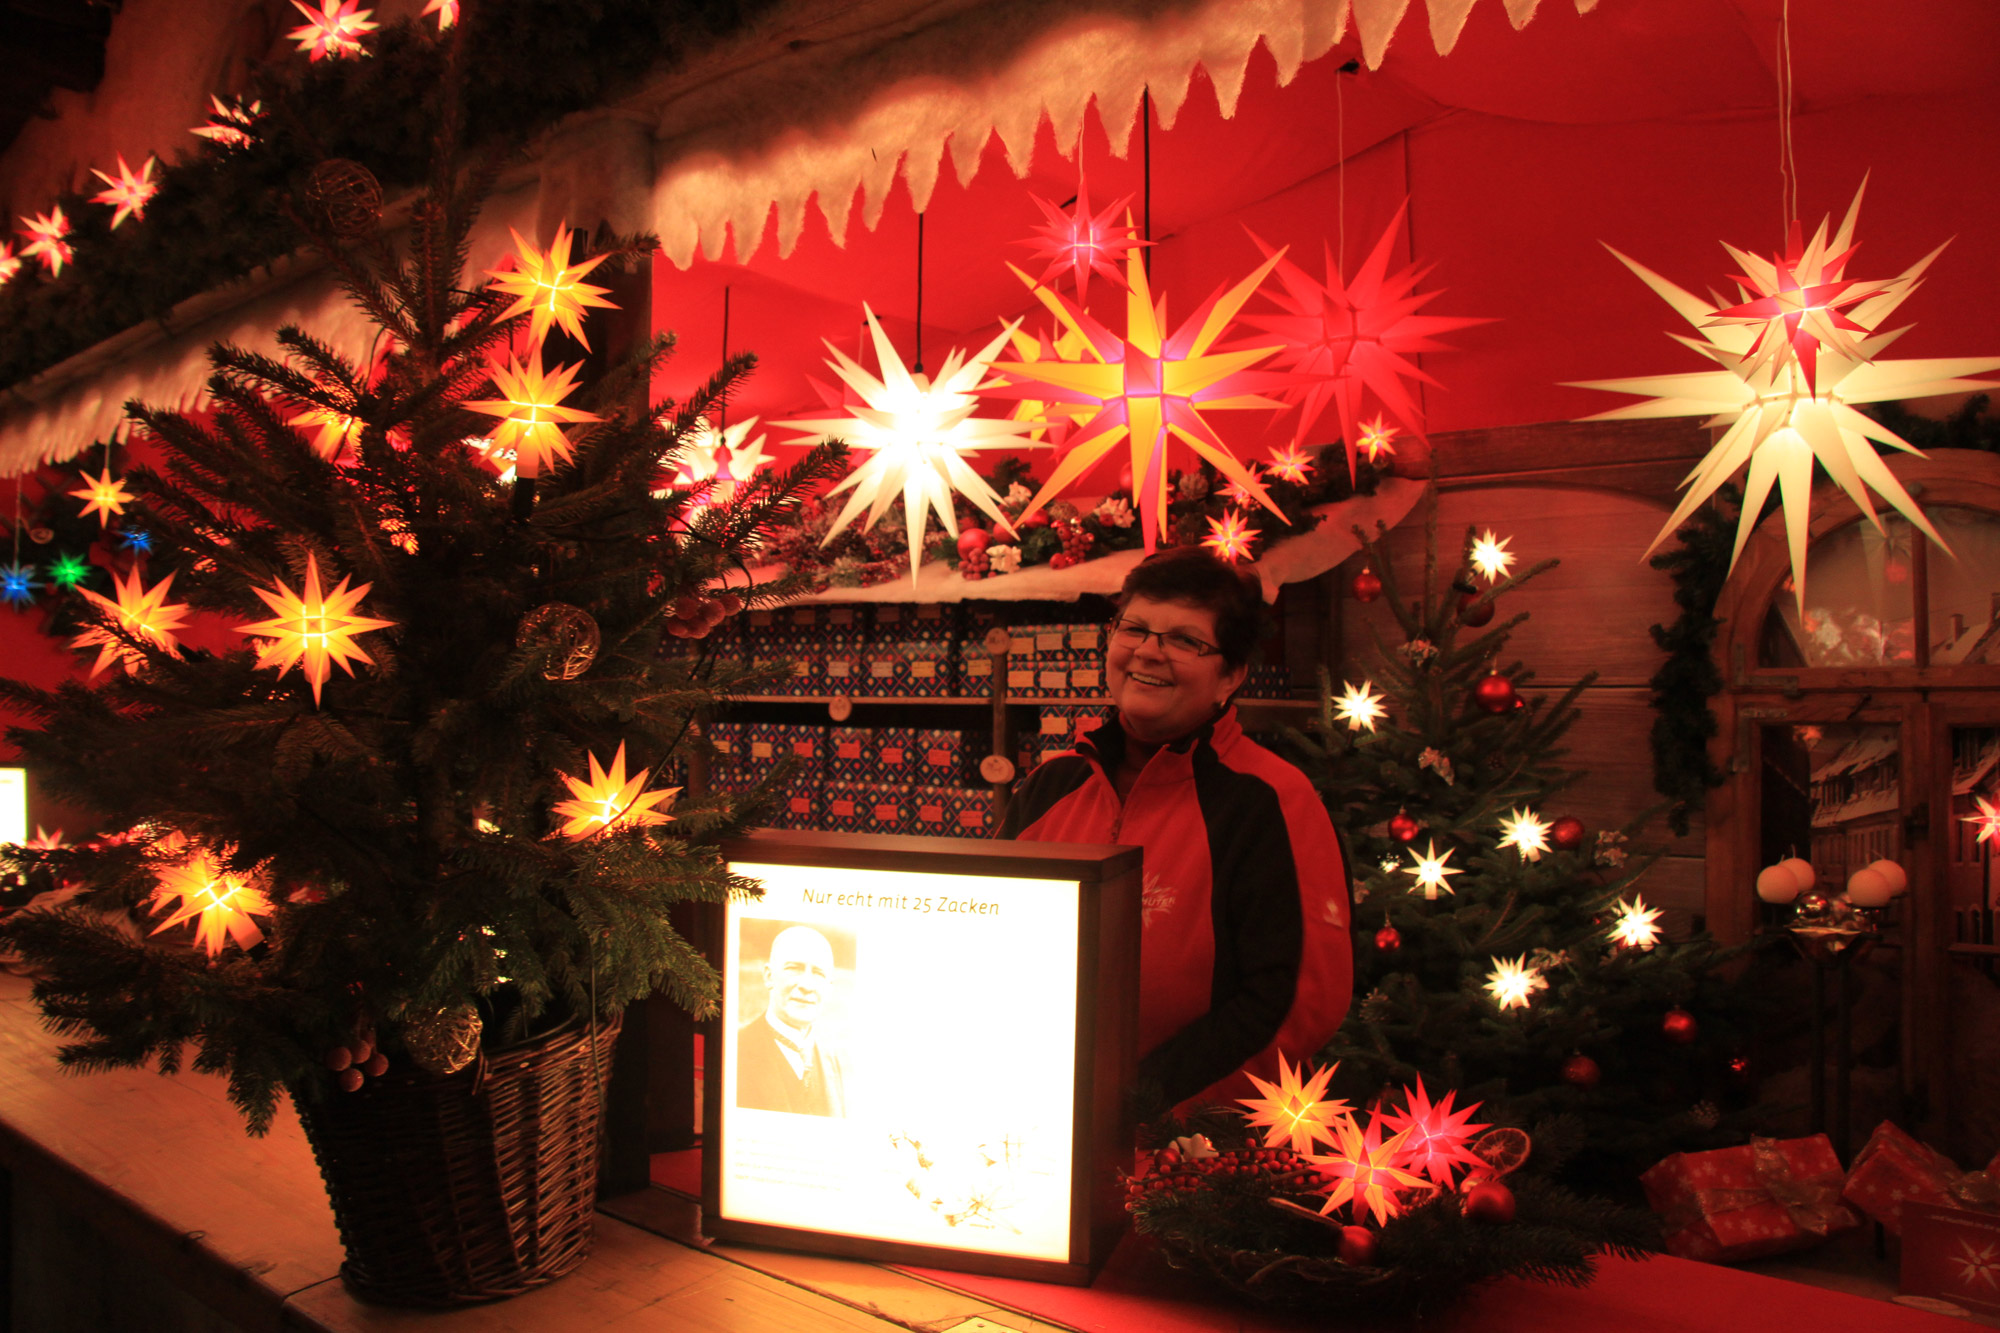 Kerstmarkt Trier 2015 - Kraampje met Herrenhuther Weihnachtssternen